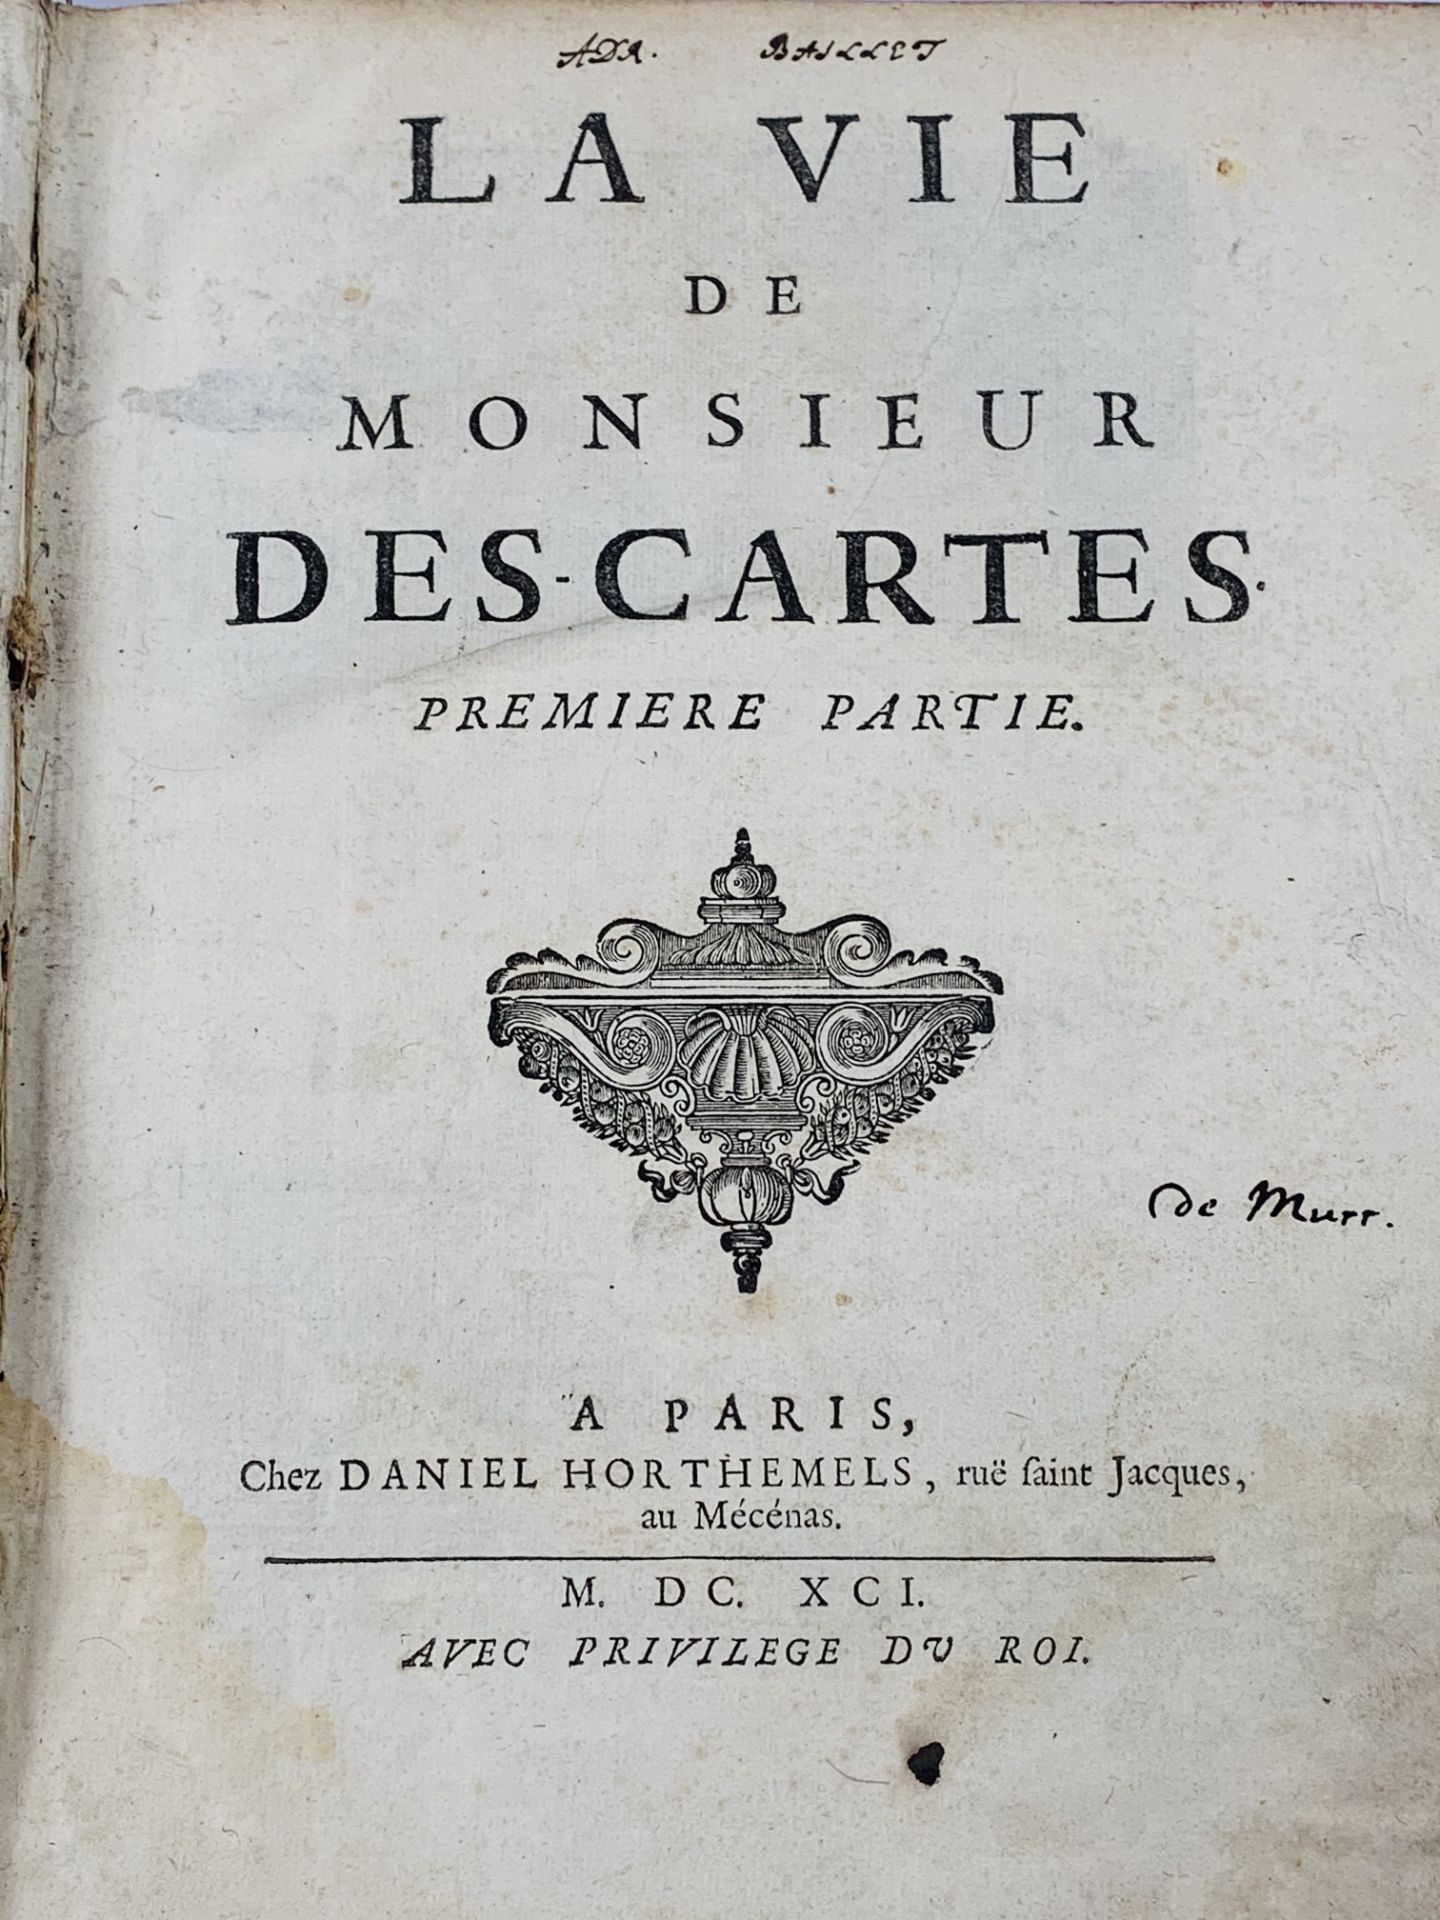 La Vie de Monsieur Rene Descartes, by ? Adrien Baillet, 2 volumes bound in 1, published Paris 1691 - Image 2 of 3